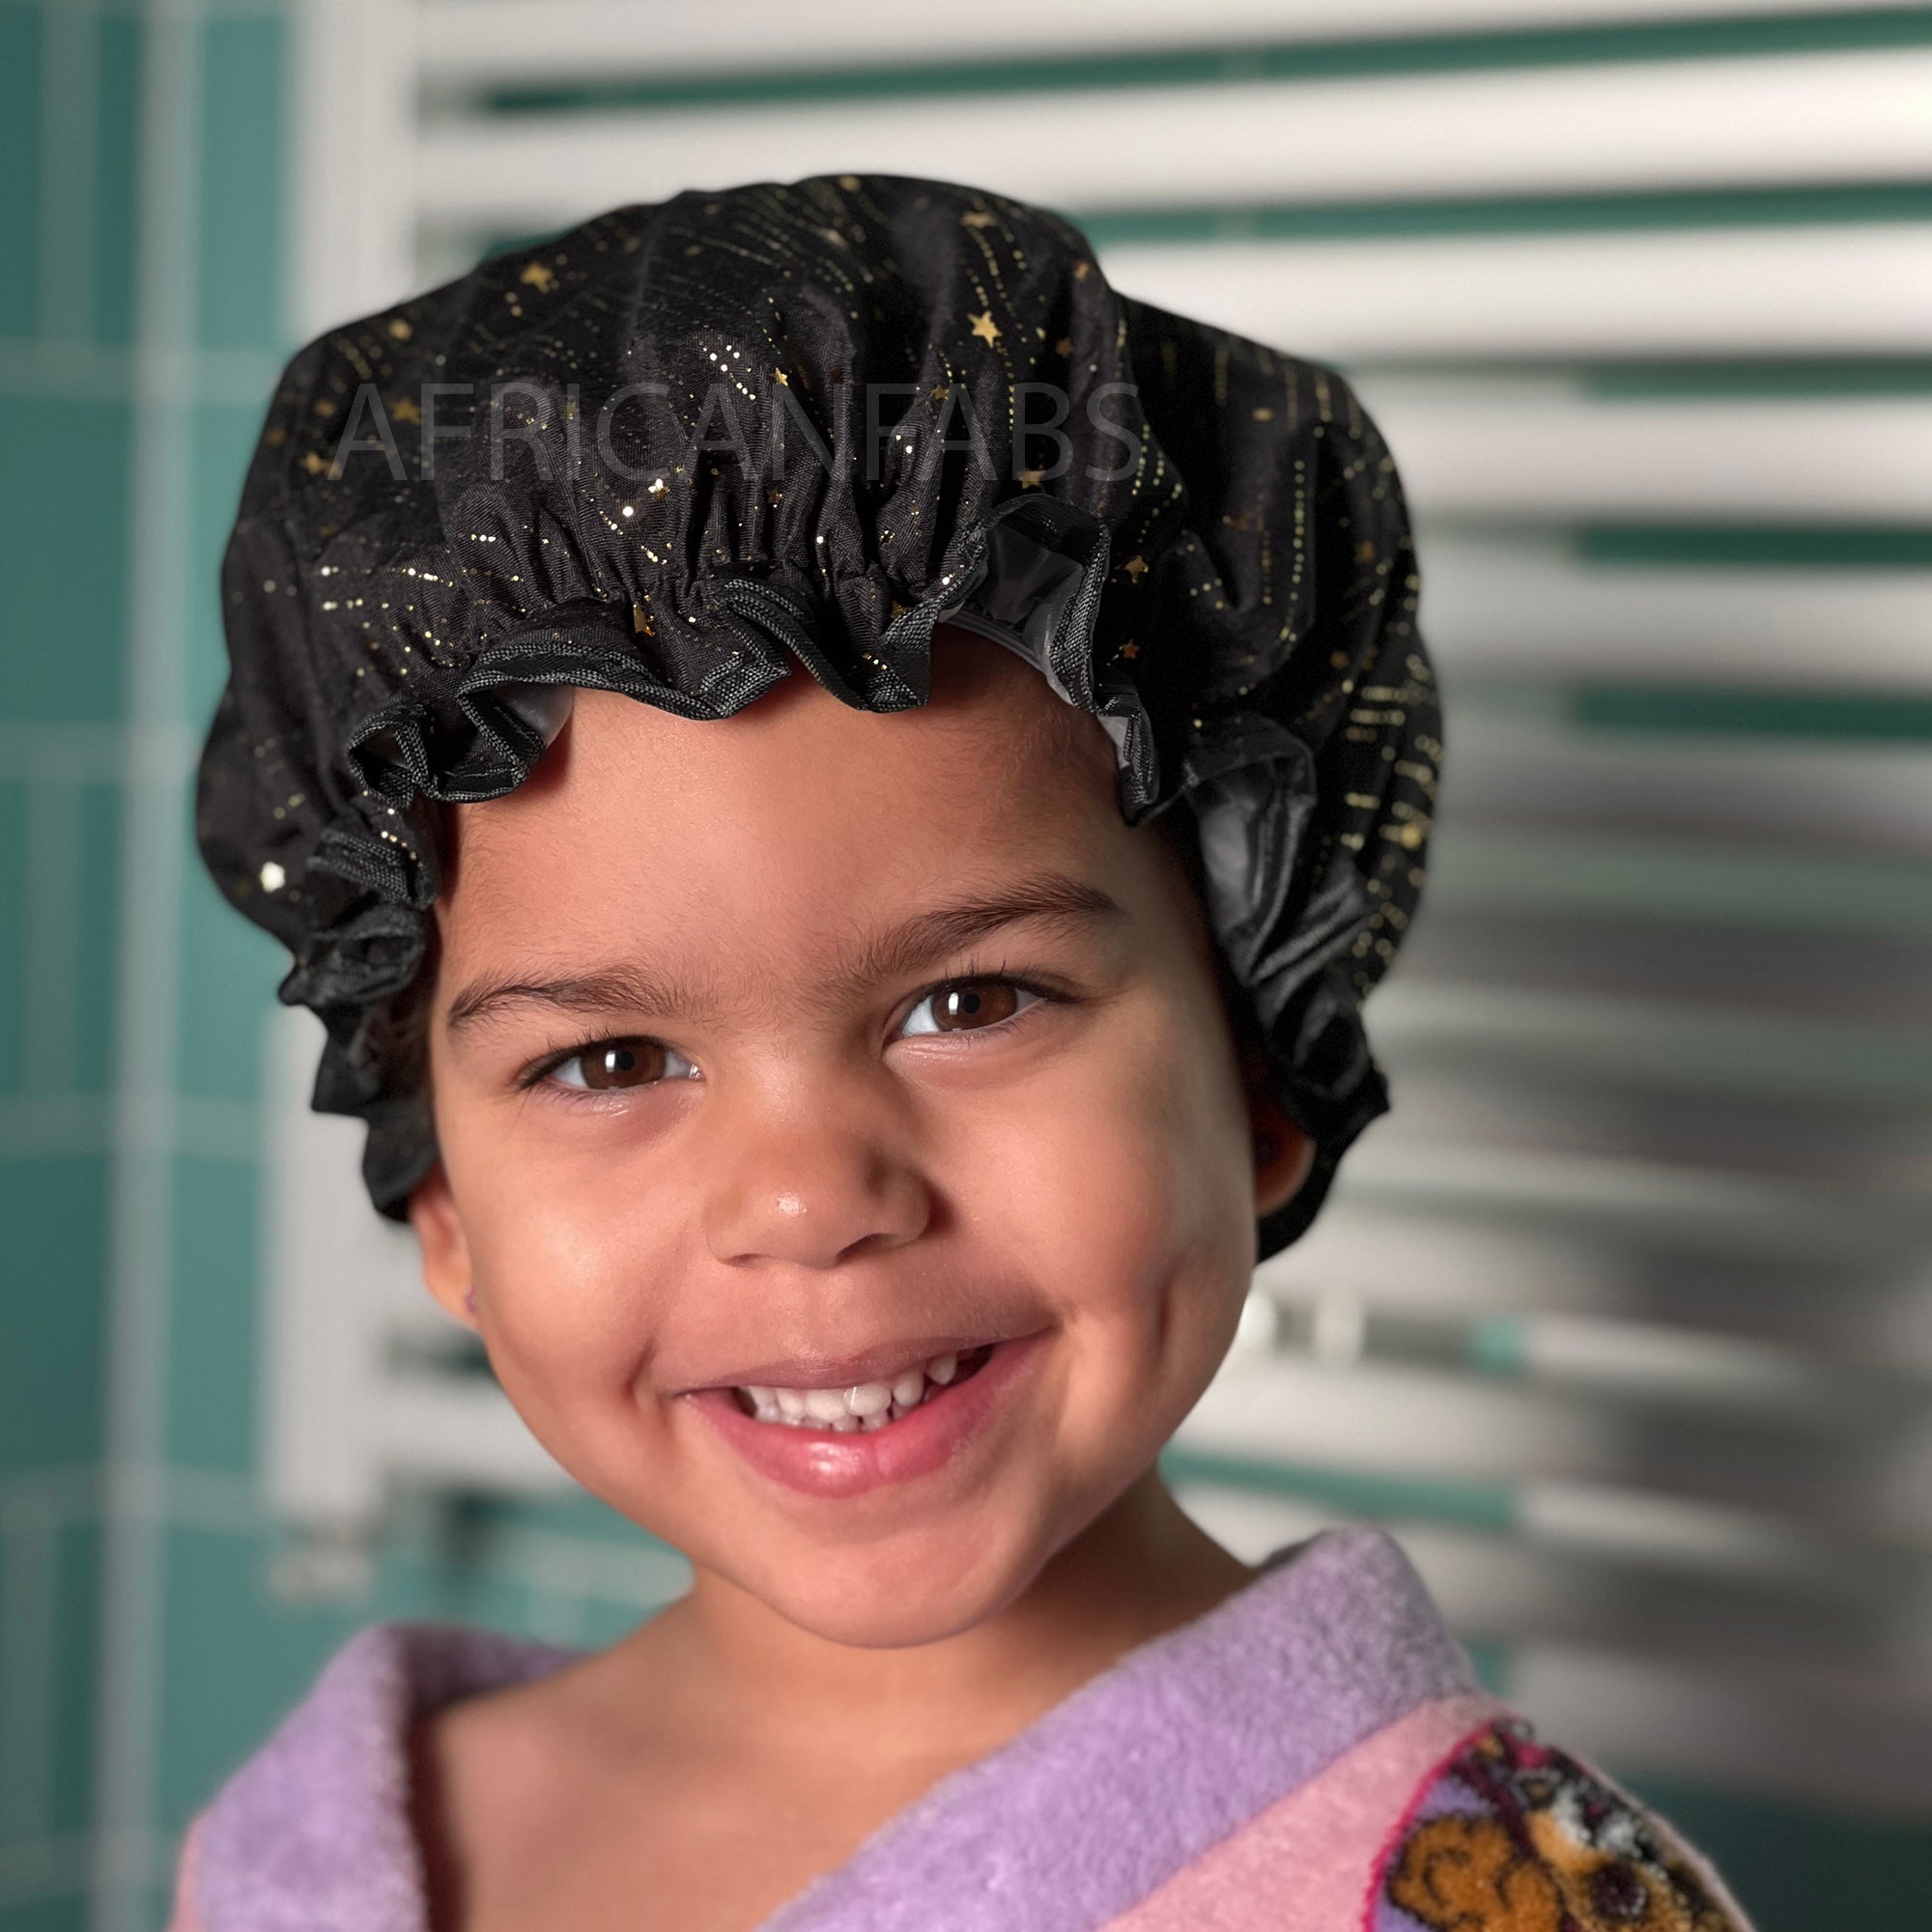 Bonnet de douche pour enfants (réutilisable) - Noir Gold Stars